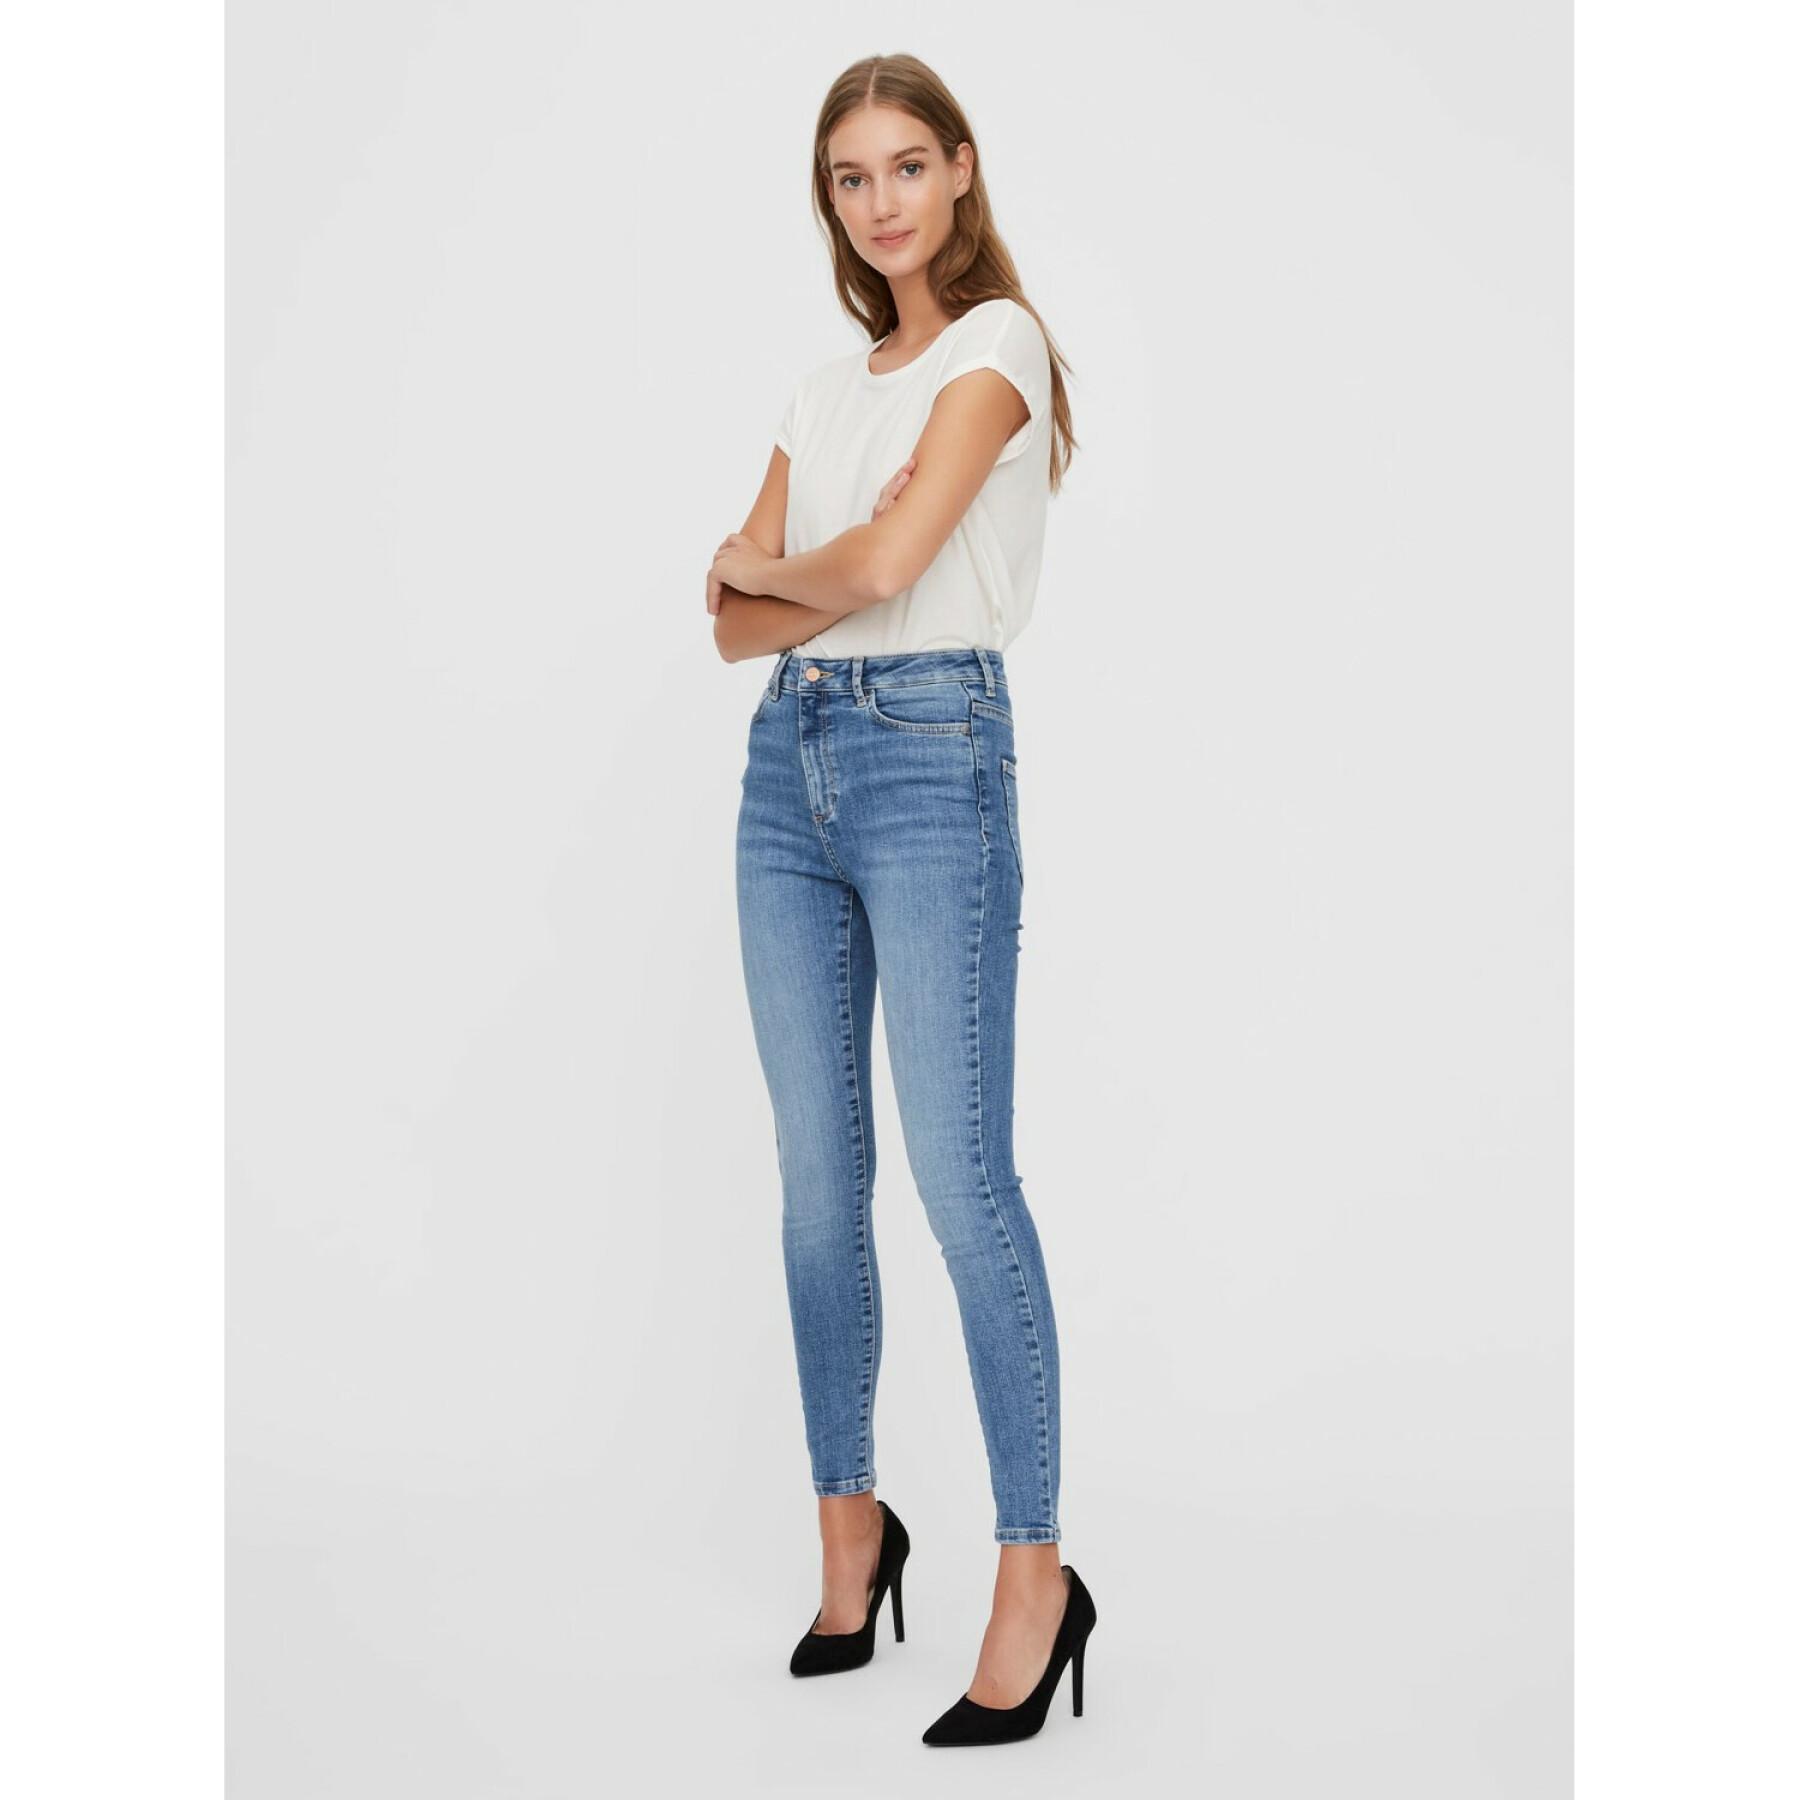 Jeans skinny femme Vero Moda vmsophia 3142